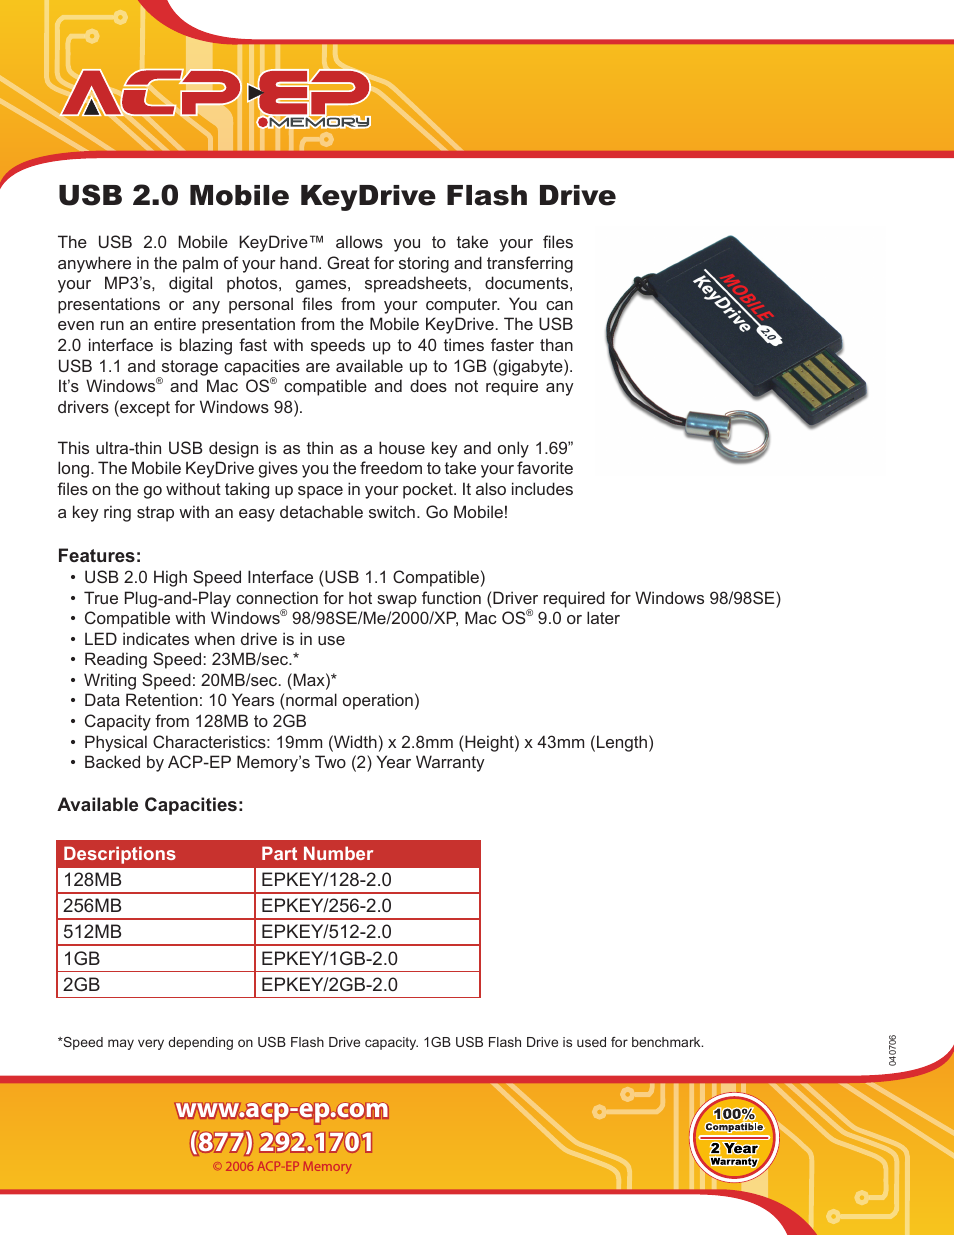 KeyDrive EPKEY/1GB-2.0